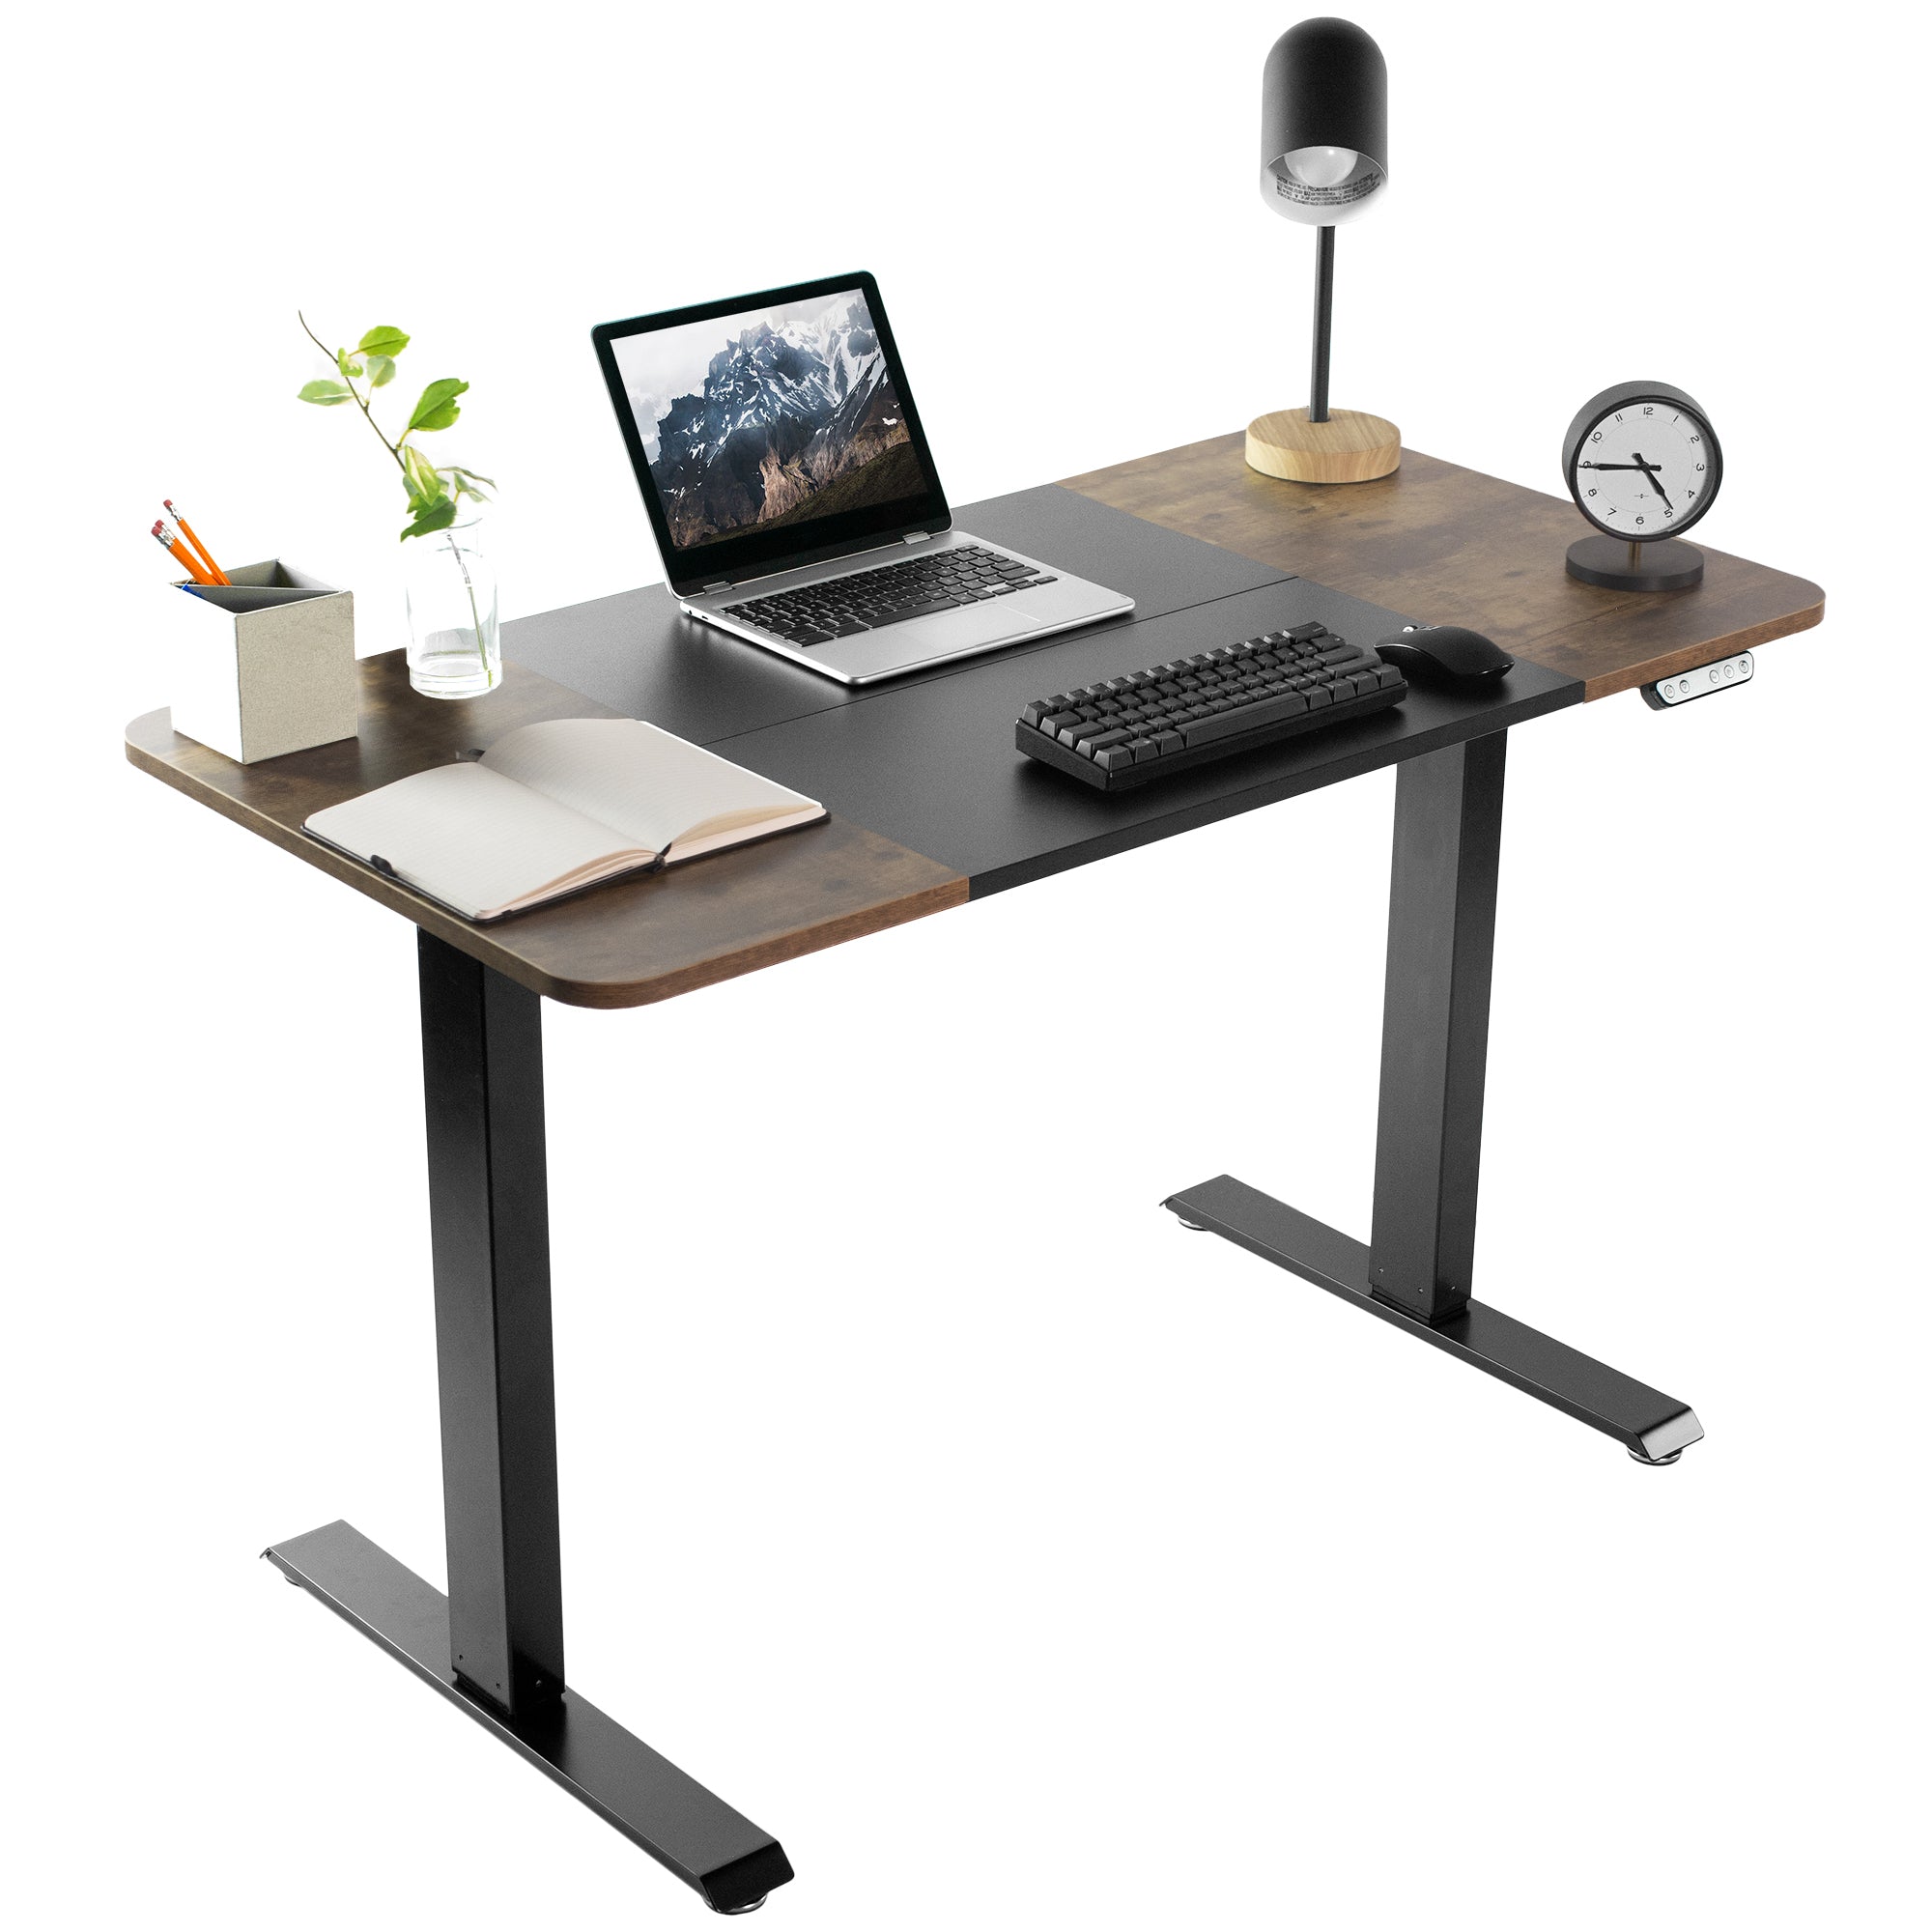 Adjustable Desks, Standing Desks & Workstations